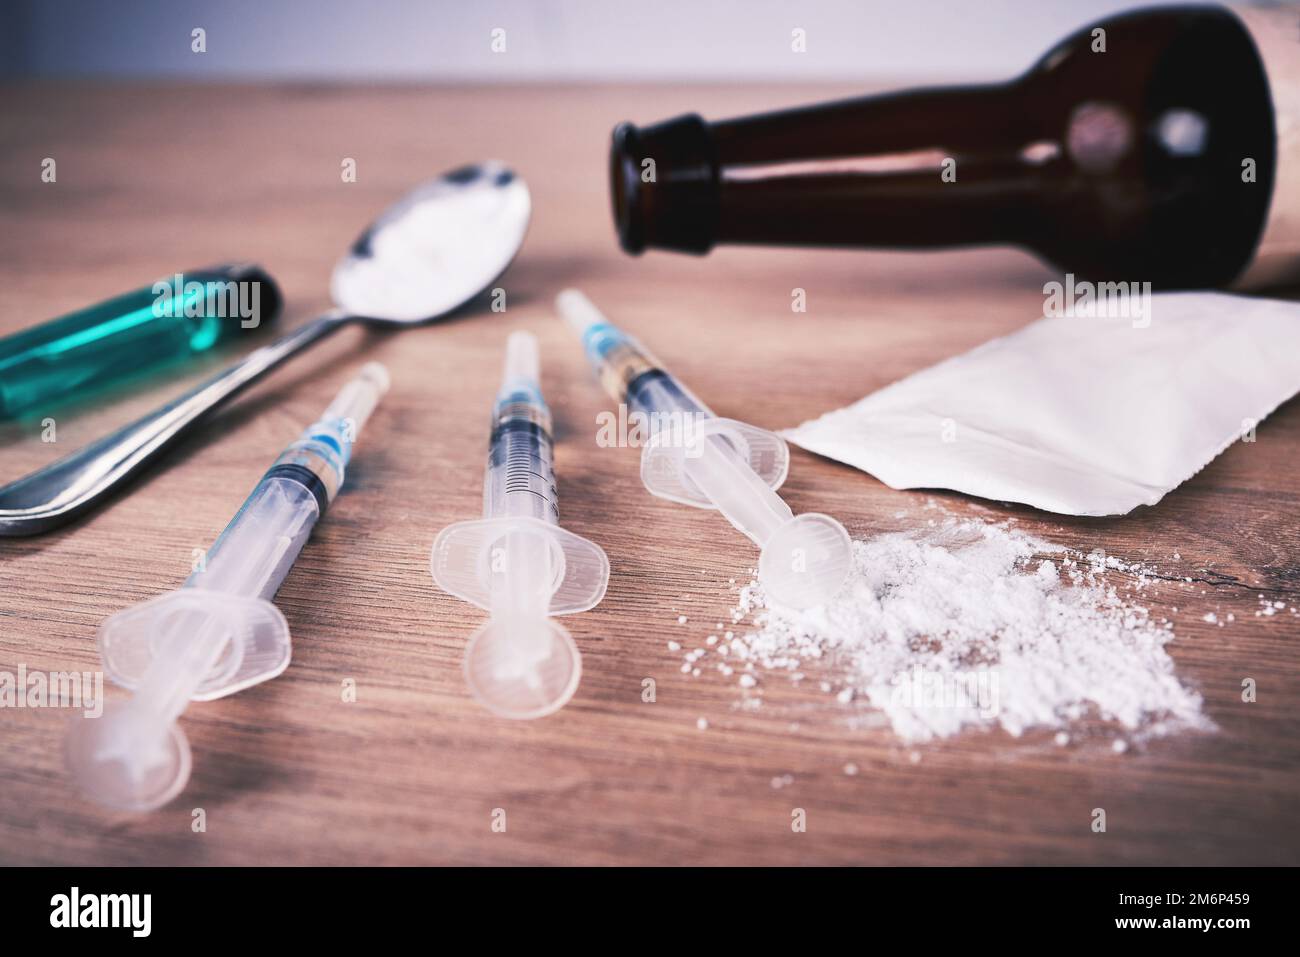 Pulver, Spritze und Medikamente mit Löffel auf dem Tisch bei Alkoholabhängigkeit, Drogenrehabilitation und Drogenmissbrauch. Medizin, illegale Produkte und Drogen Stockfoto